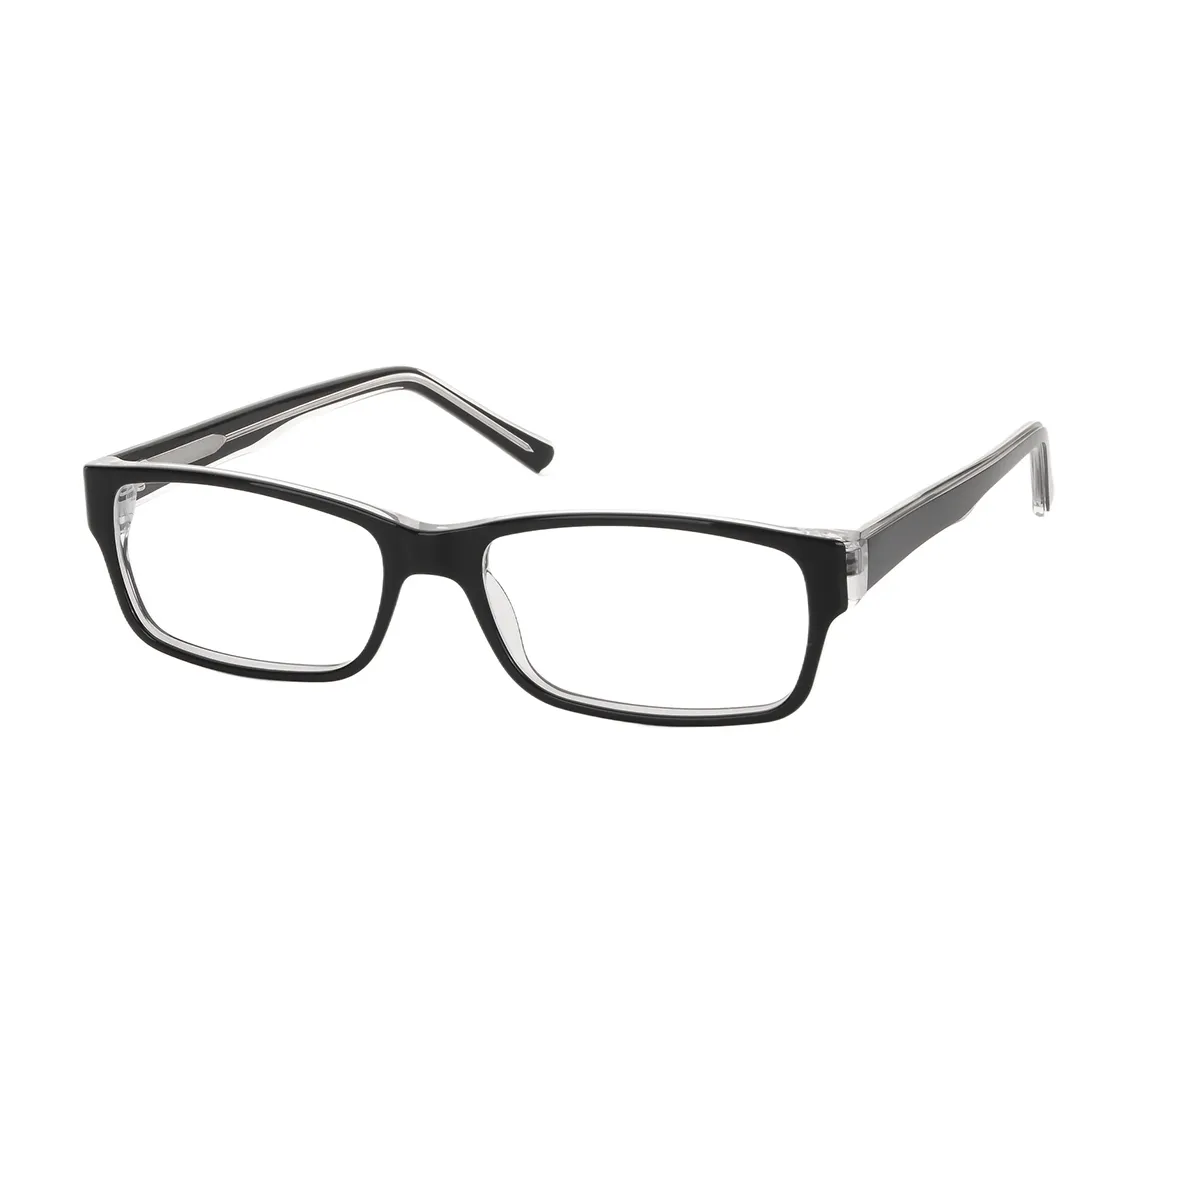 Boston - Rectangle Black Glasses for Men & Women - EFE